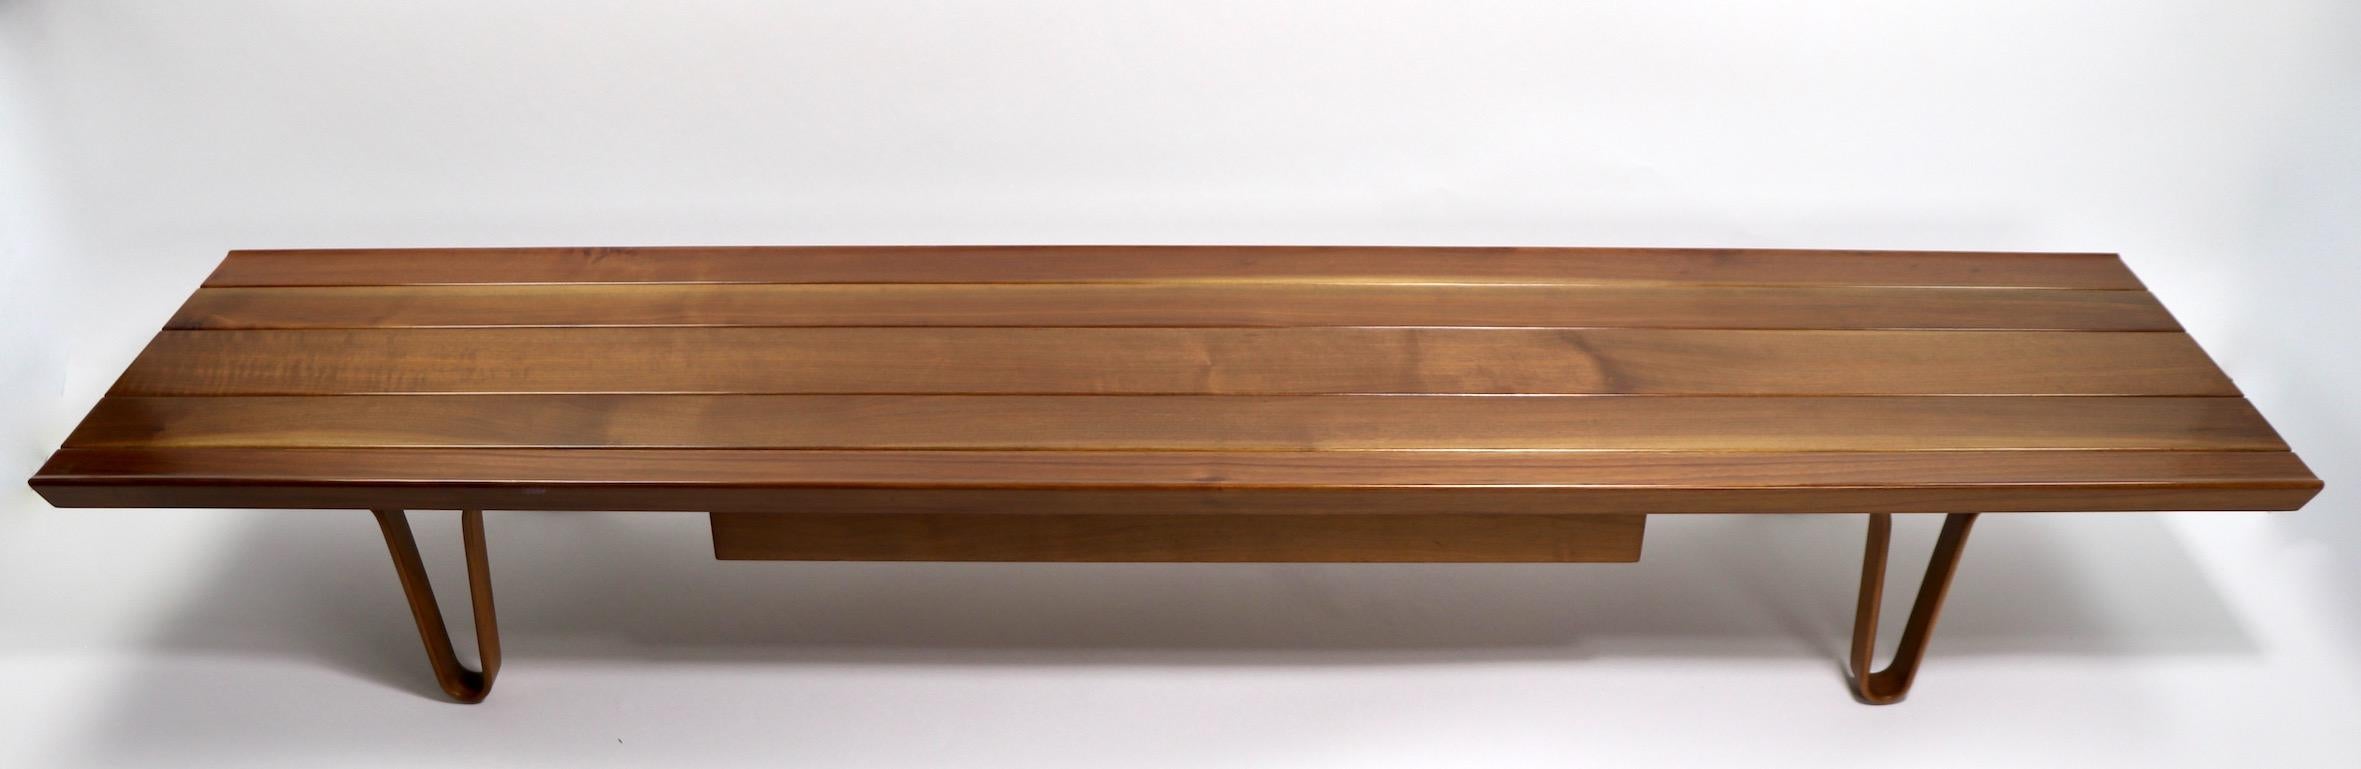 Sehr seltenes Paar Long John-Tische, entworfen von Edward Wormley für Dunbar. Beide wurden professionell aufgearbeitet, jede hat eine Schublade mit dem Classic gold D Dunbar Metallschild. Sie werden einzeln angeboten und bepreist, aber wir würden